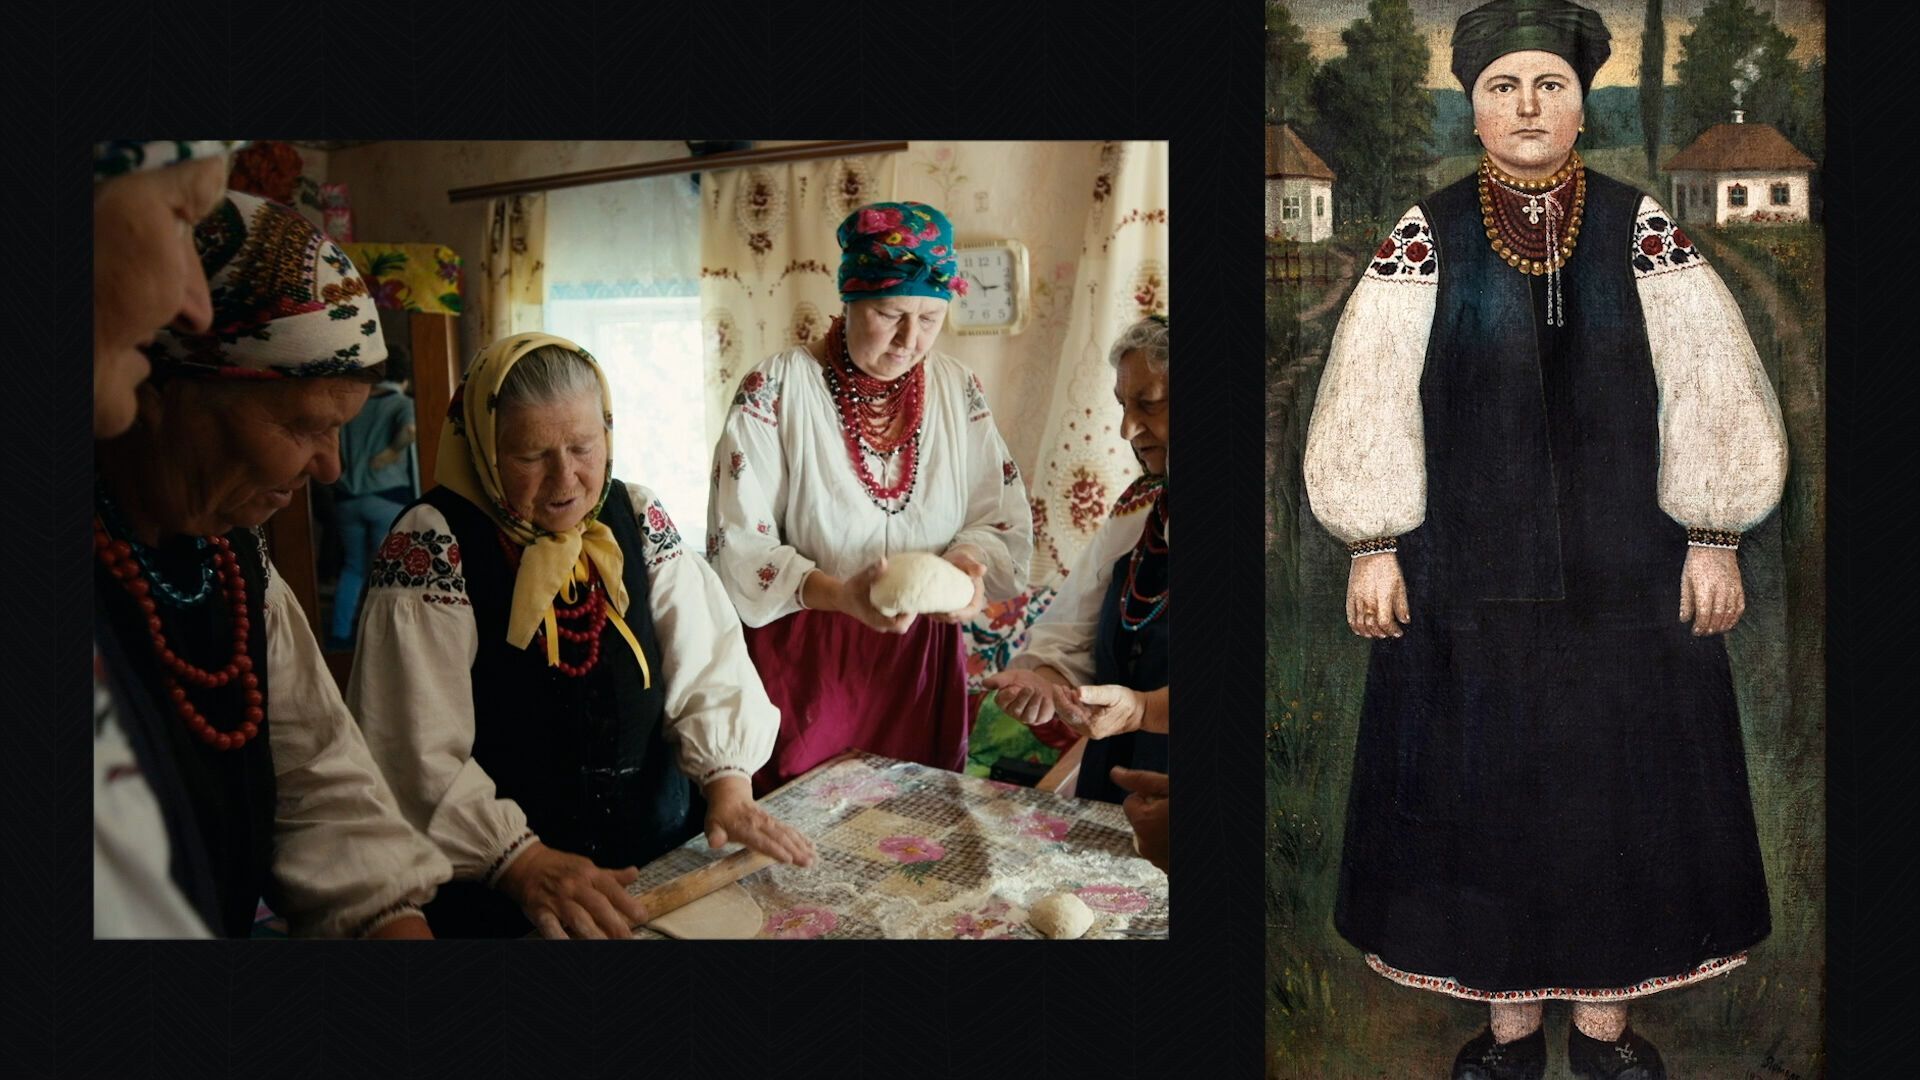 "Живая традиция": вышел короткометражный фильм о ценности традиционной украинской культуры